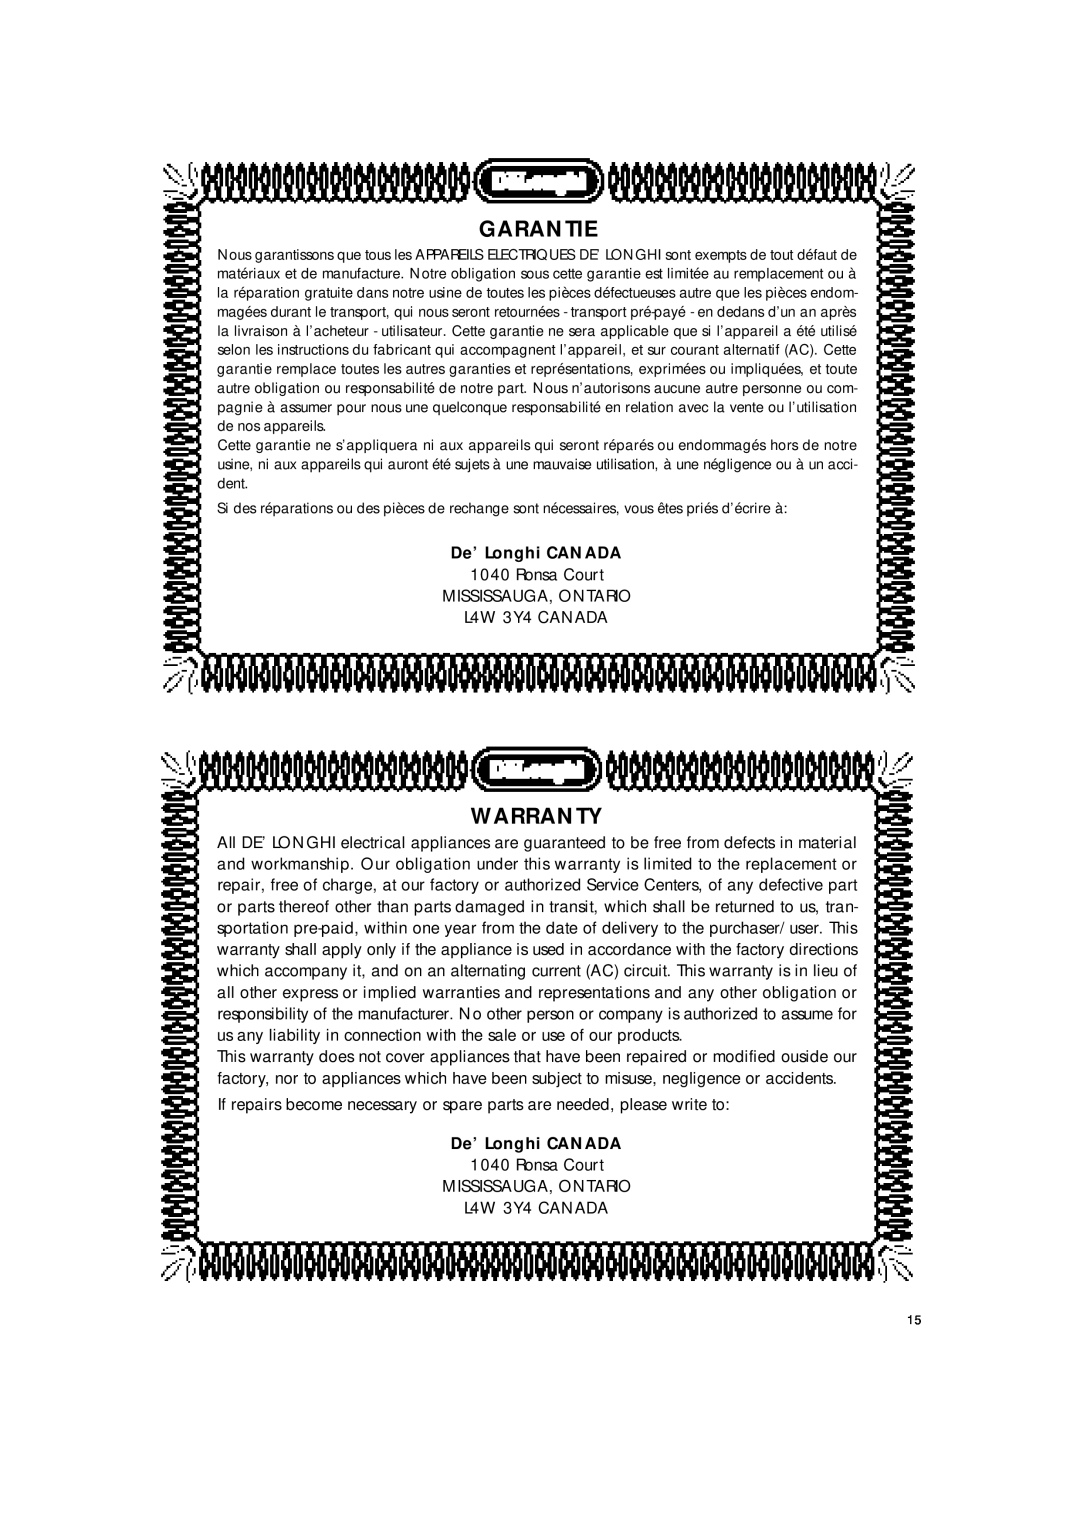 DeLonghi BAR8 manual Garantie, Warranty, De’ Longhi CANADA 